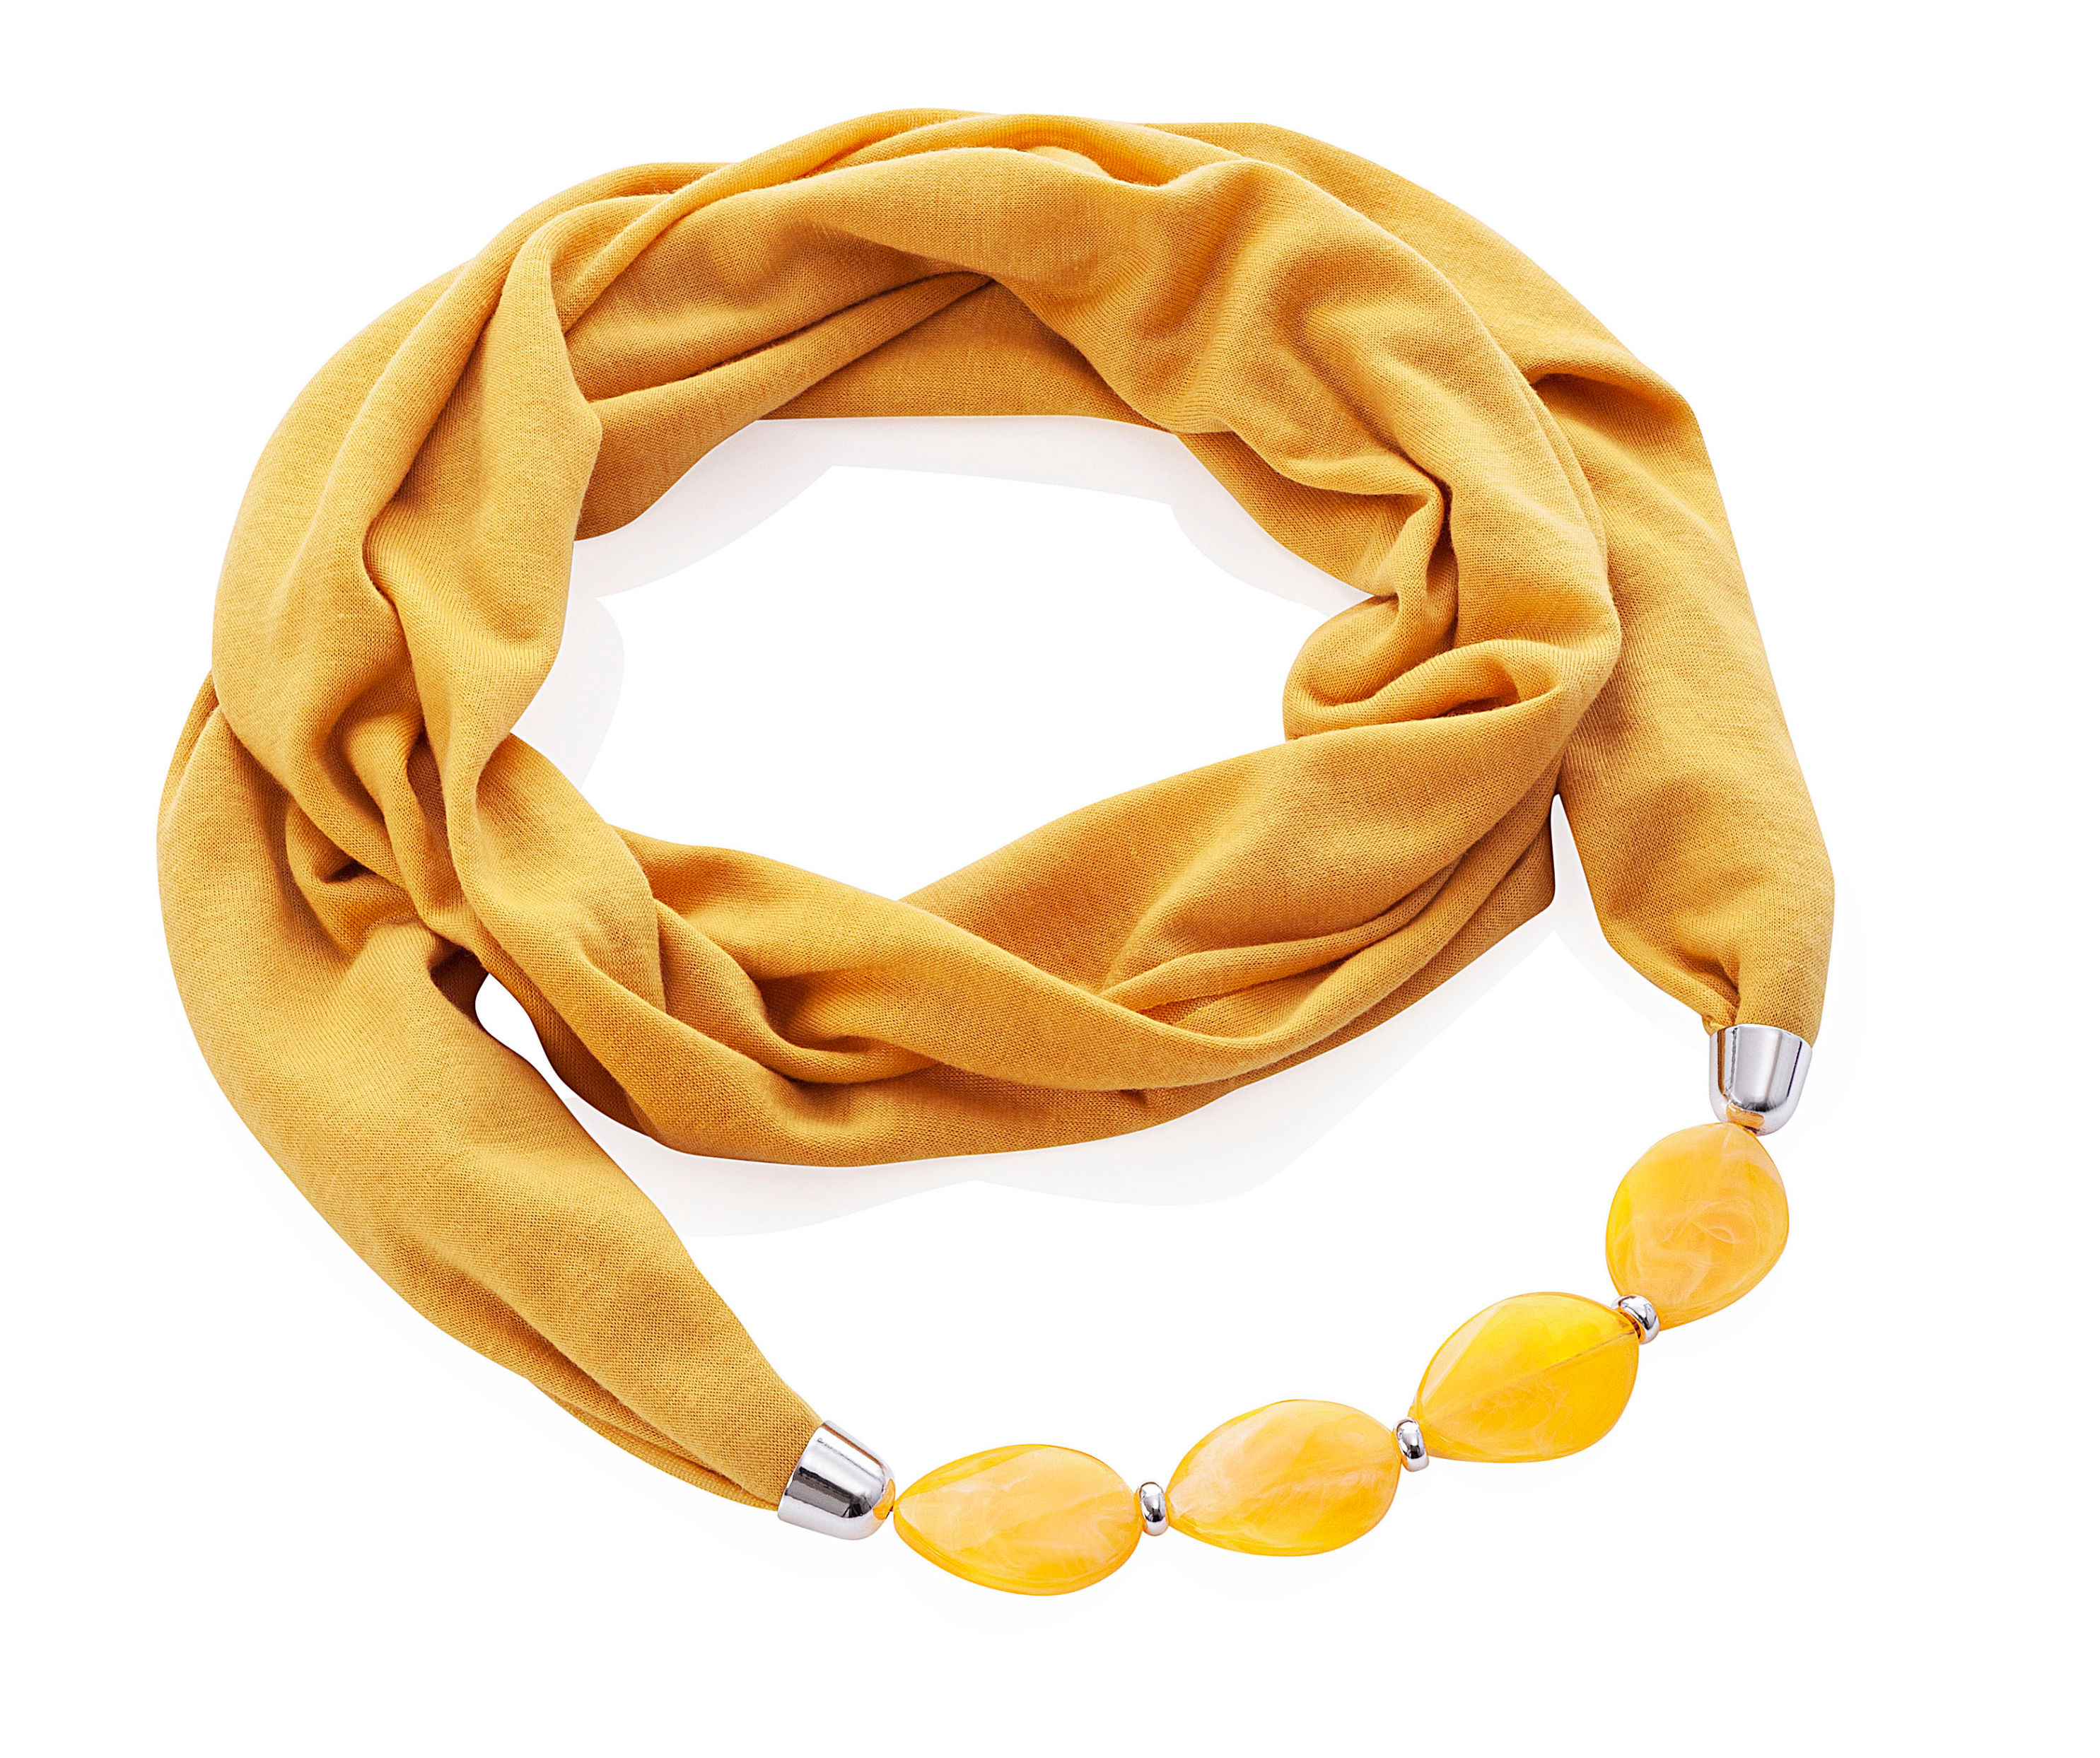 Loop-Schal mit Schmucksteinen Farbe: senfgelb | Weltbild.de